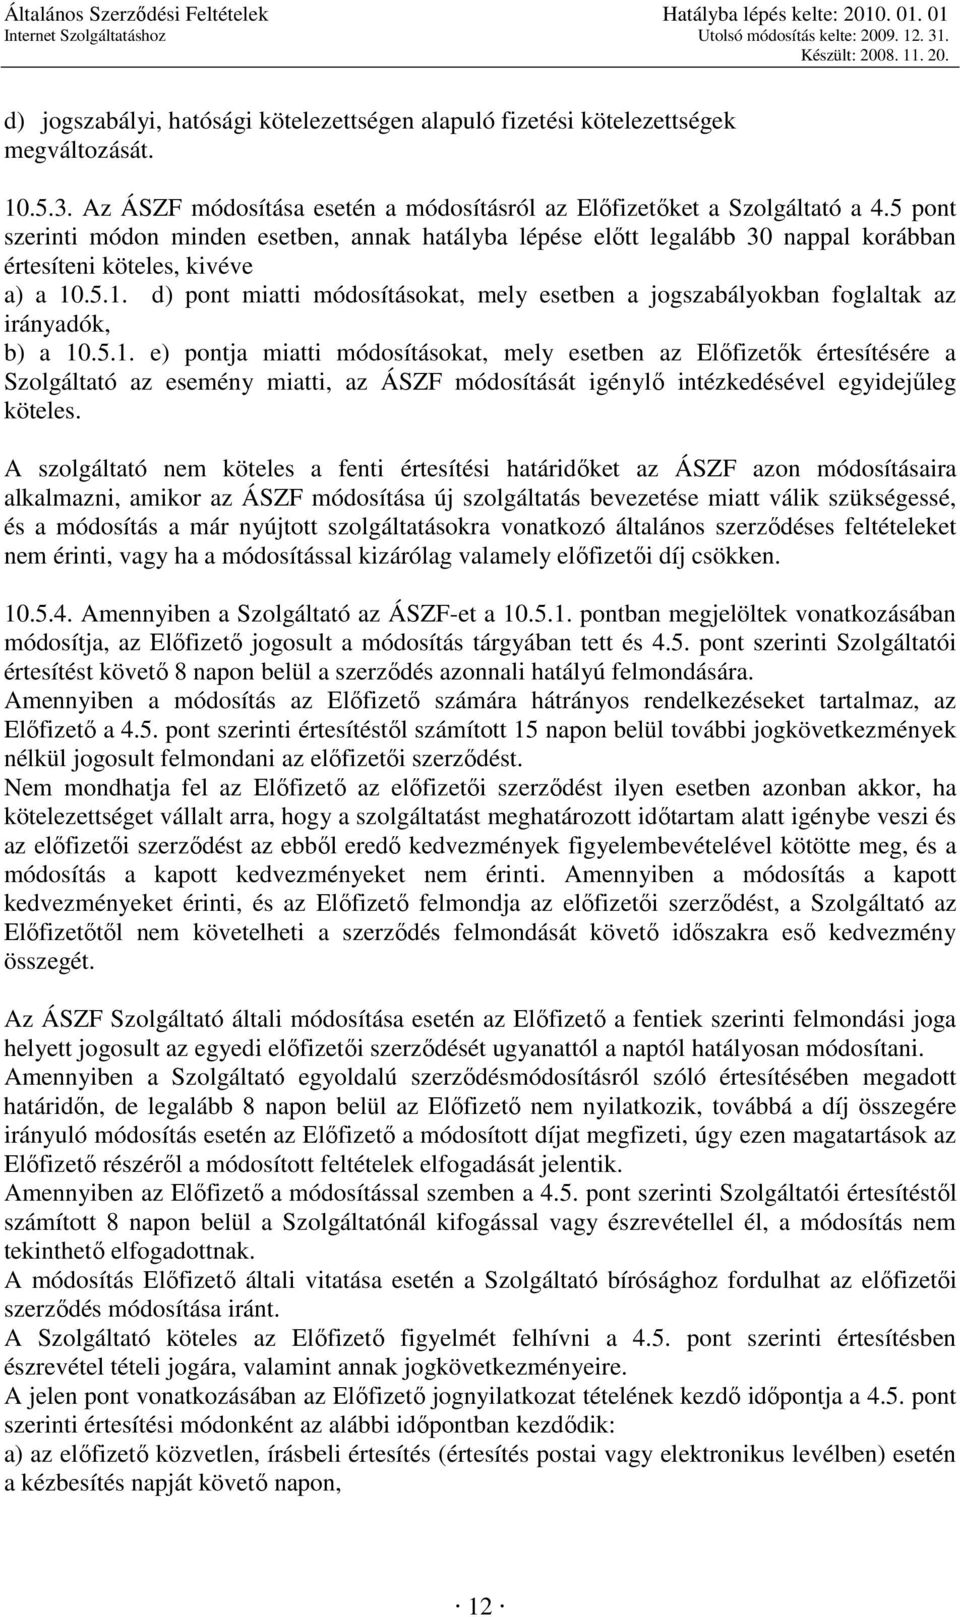 .5.1. d) pont miatti módosításokat, mely esetben a jogszabályokban foglaltak az irányadók, b) a 10.5.1. e) pontja miatti módosításokat, mely esetben az Elıfizetık értesítésére a Szolgáltató az esemény miatti, az ÁSZF módosítását igénylı intézkedésével egyidejőleg köteles.